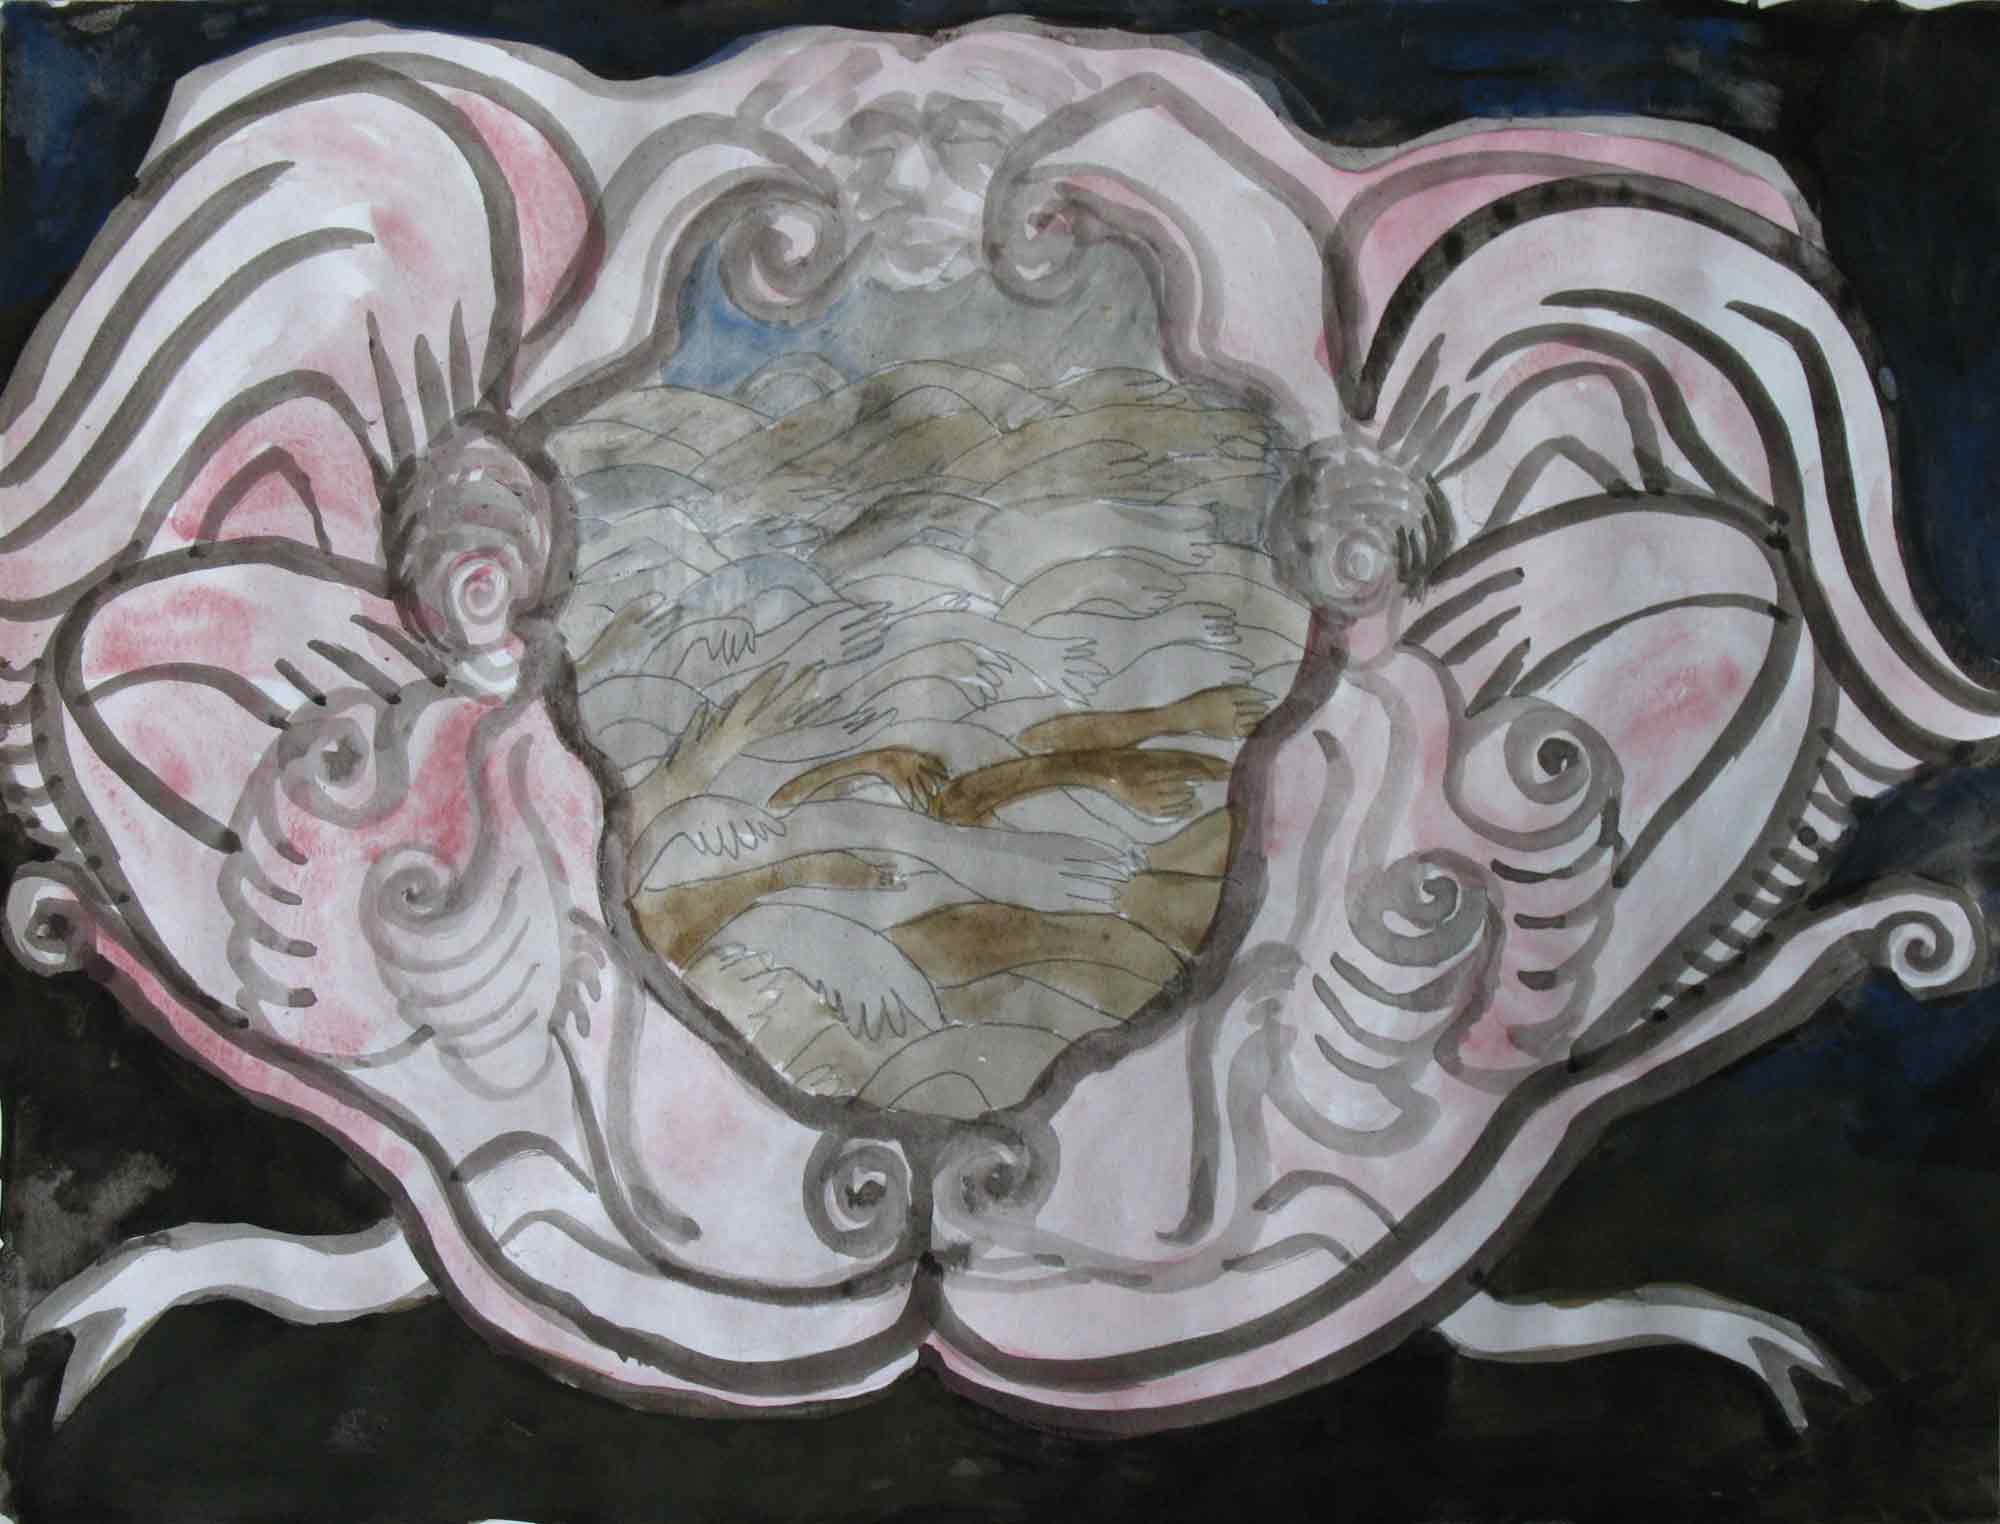   Zeekaak (Sea jaw)  potlood, aquarel, inkt 30 x 39 cm, 2010 